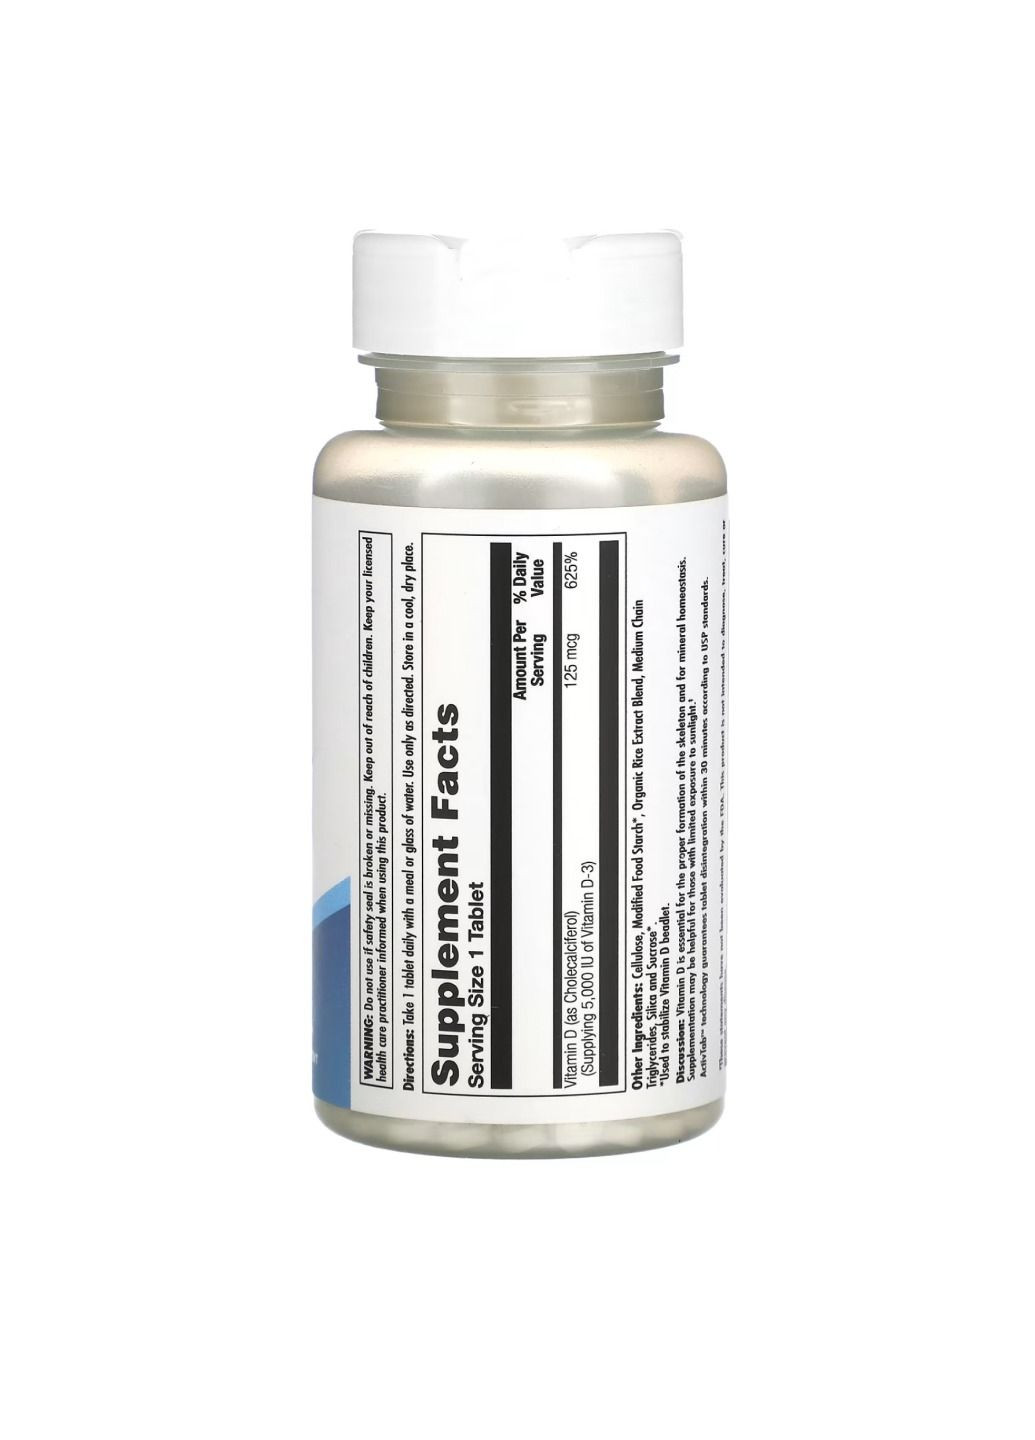 Витамин D3 D3 125mcg - 60 tabs KAL (285736307)